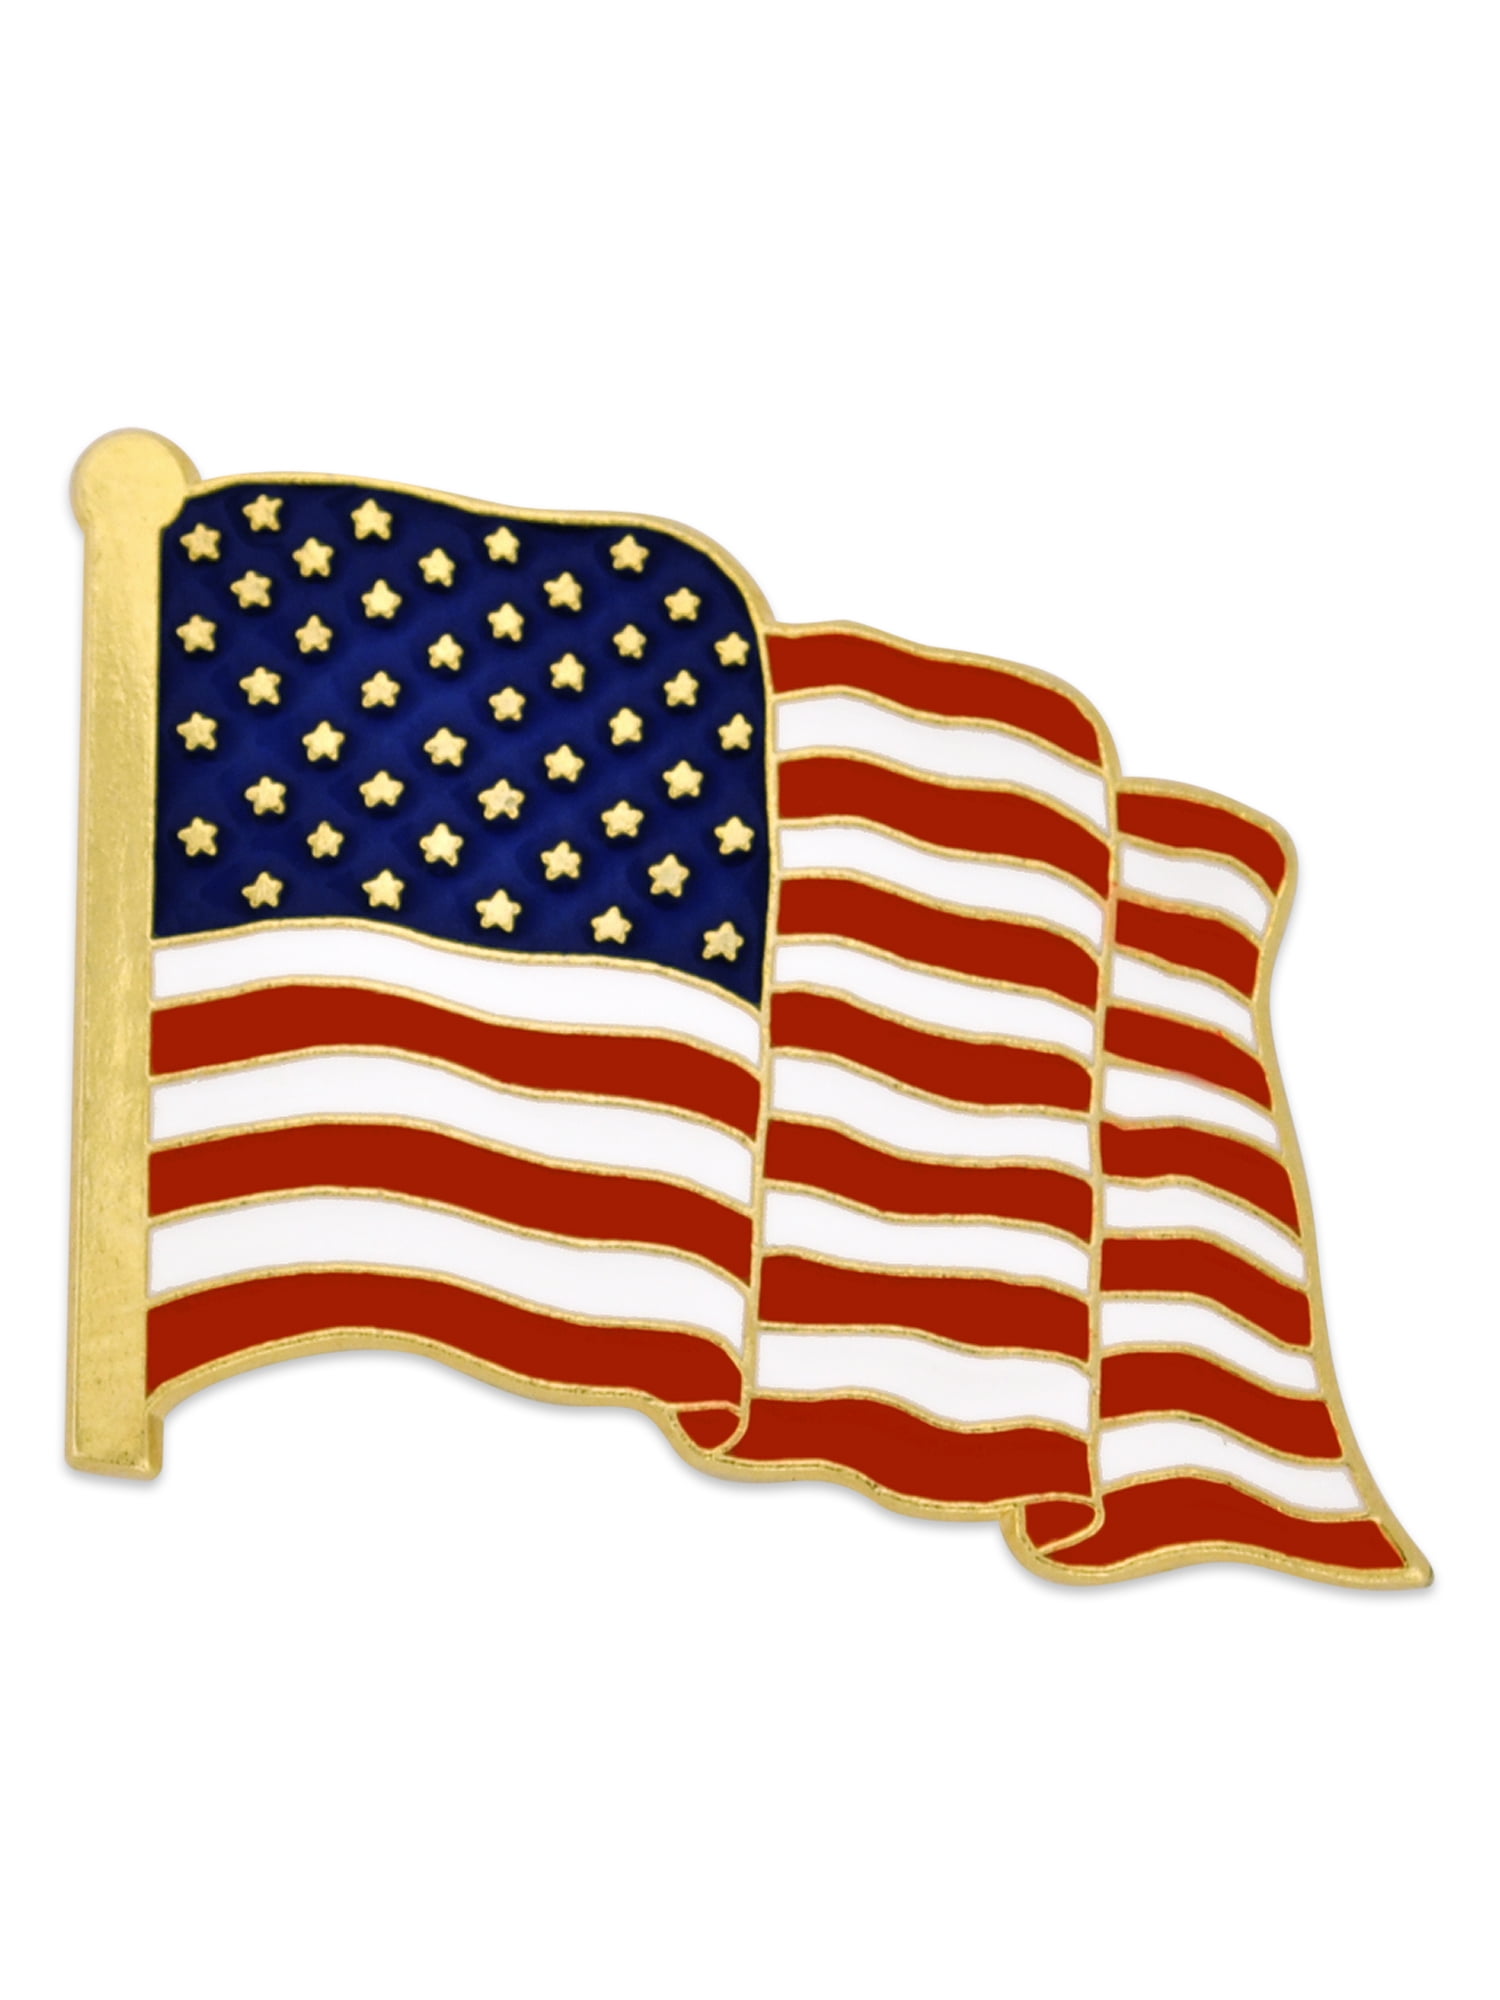 Vintage Missouri USA State Flag Lapel Travel Pin Gold Tone Enamel Collectible 